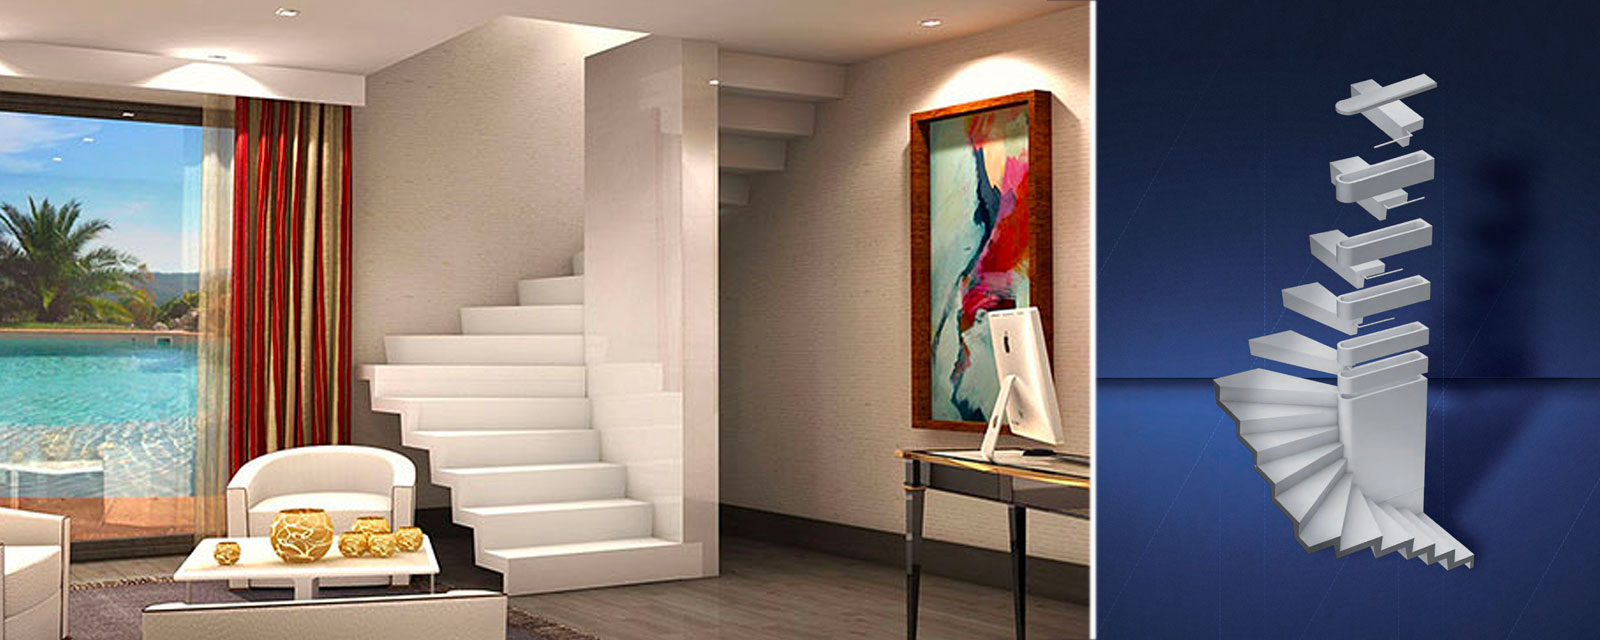 à droite de l'image une illustration de kit d'escalier et à gauche un visuel réaliste de l'escalier monté